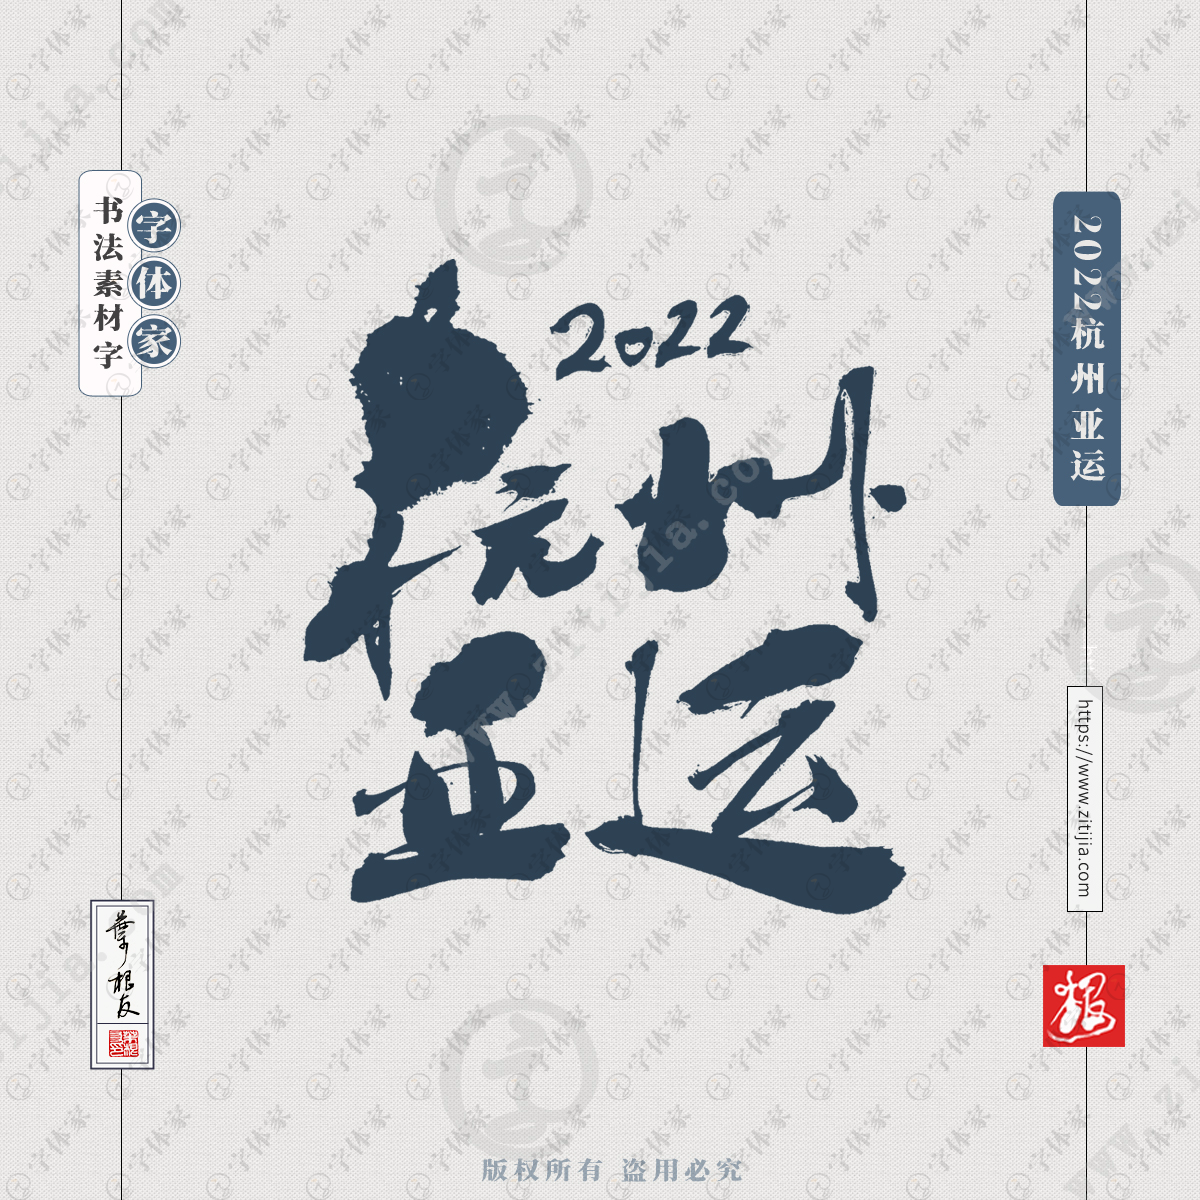 2022杭州亚运叶根友亚运会文案书法字体可下载源文件书法素材